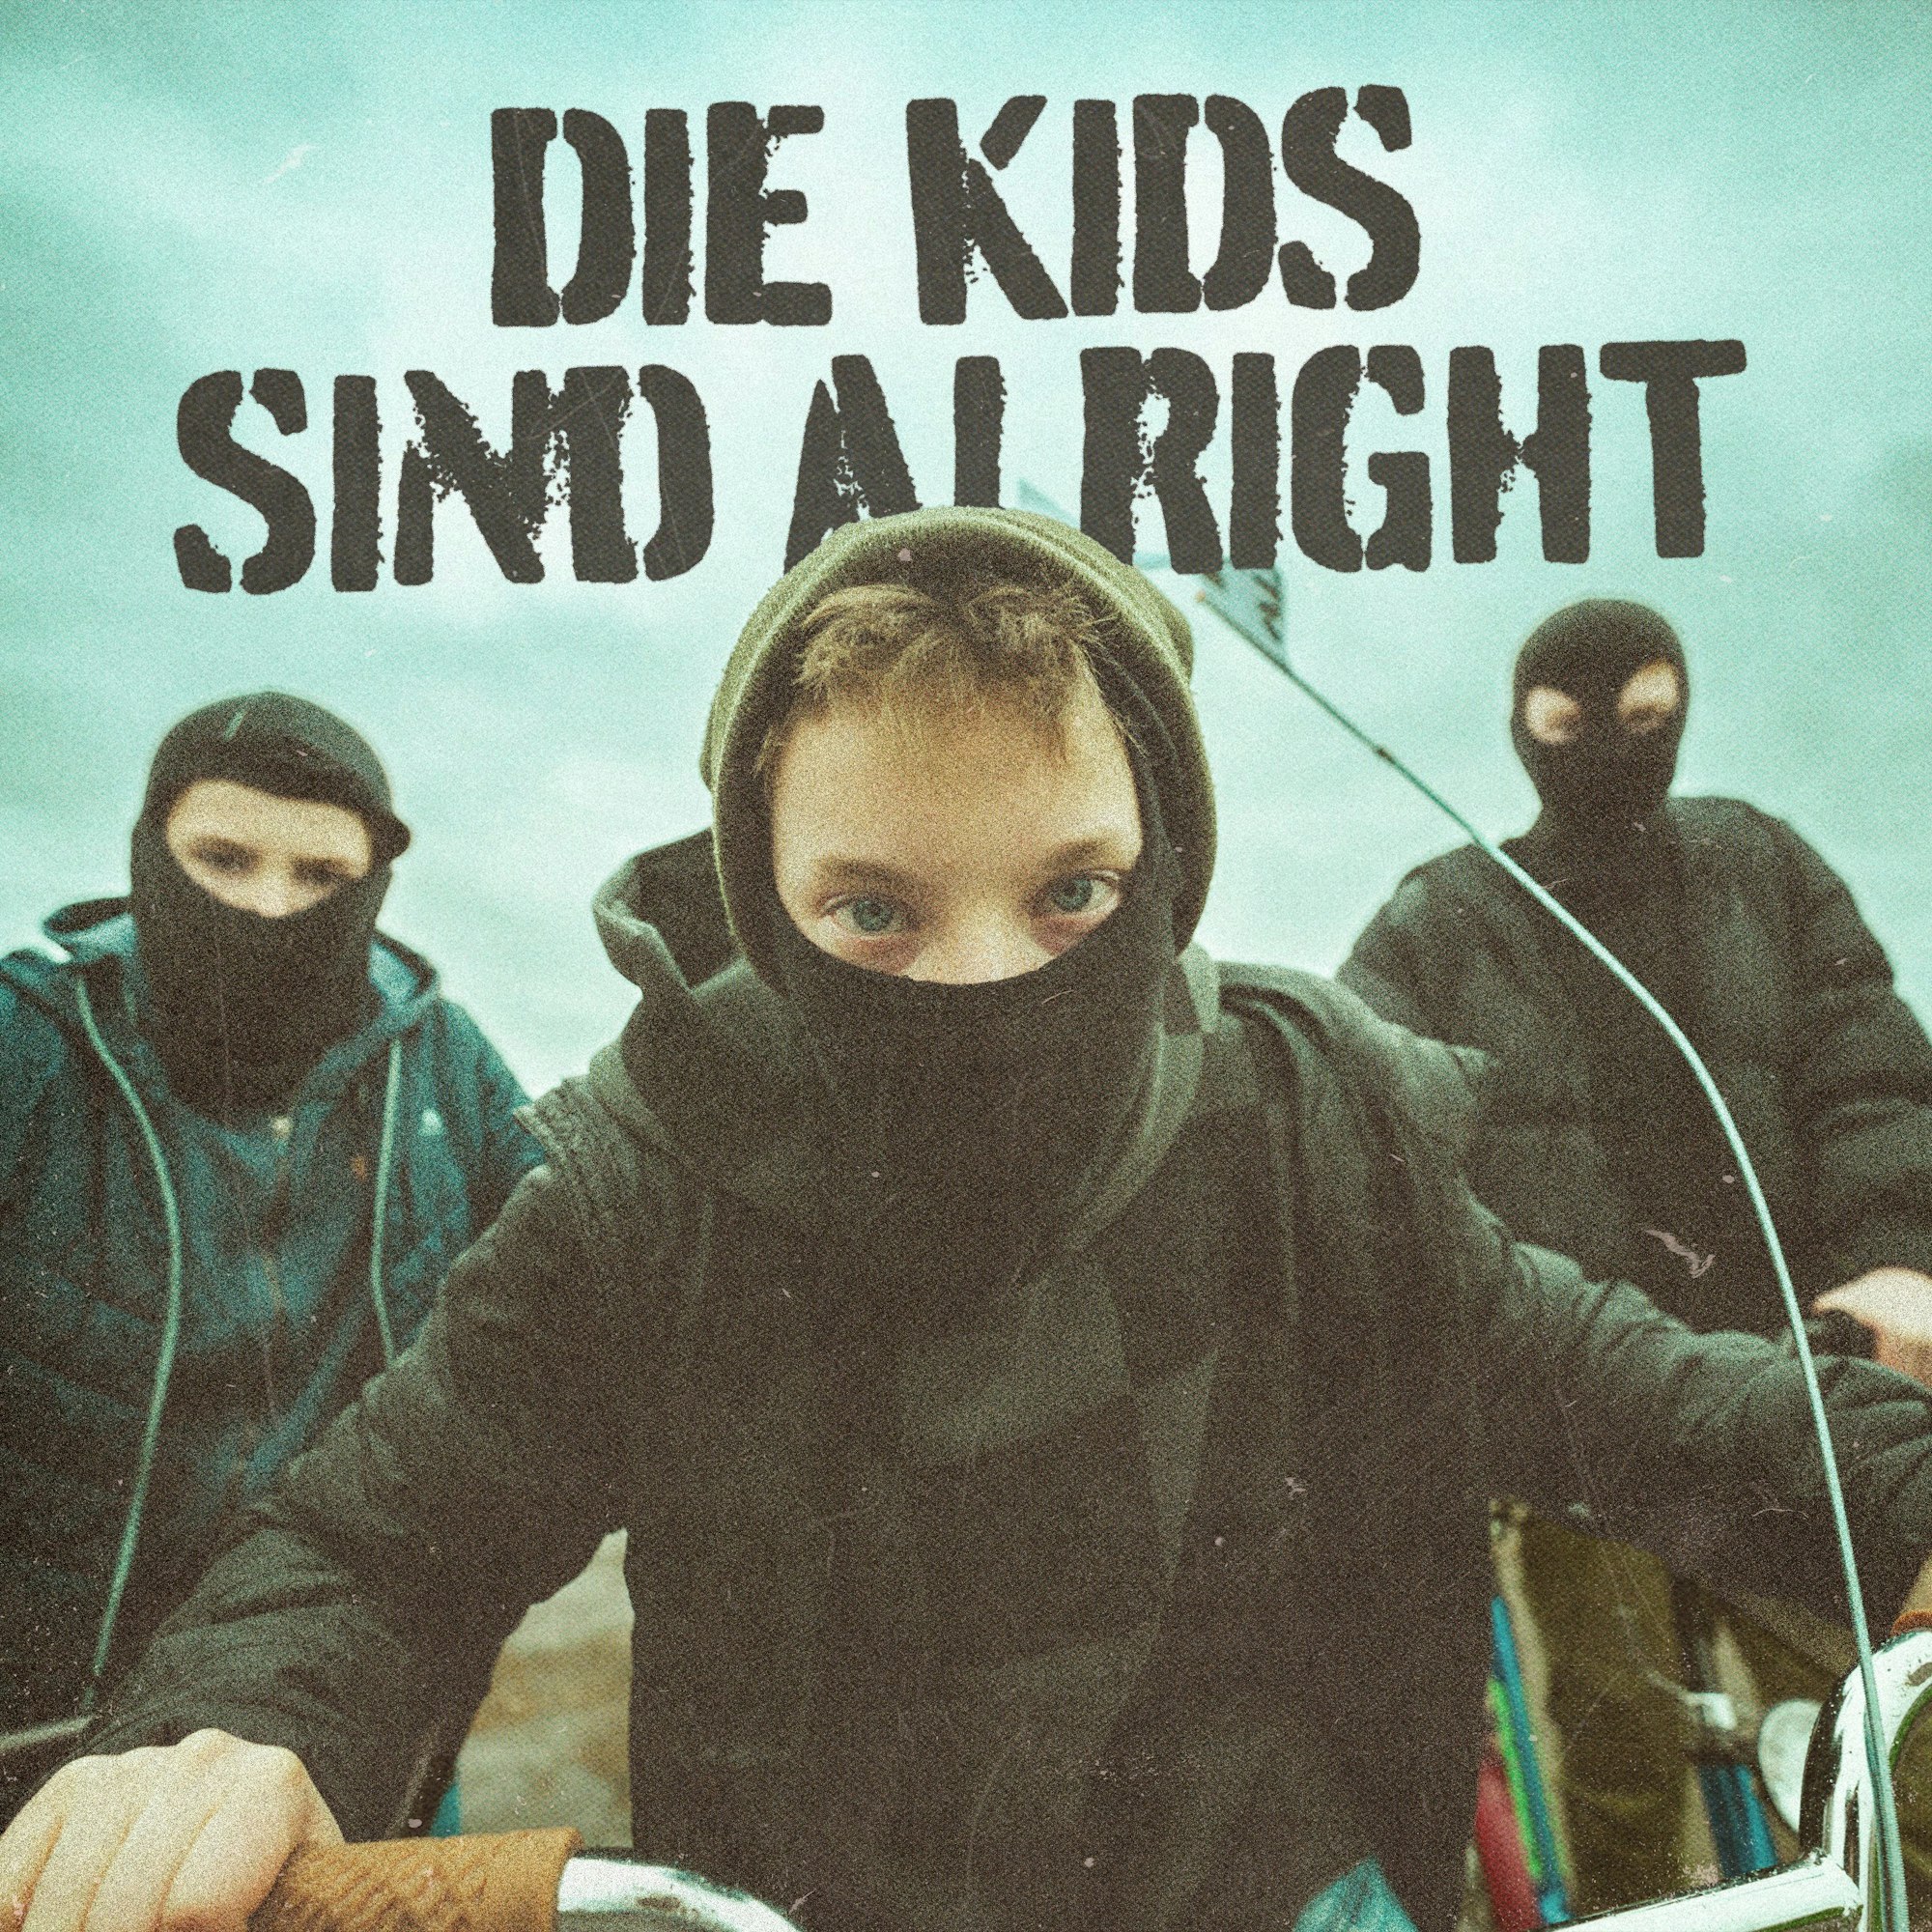 Das neue Cover zeigt drei Kinder mit schwarzer Kleidung und Masken.